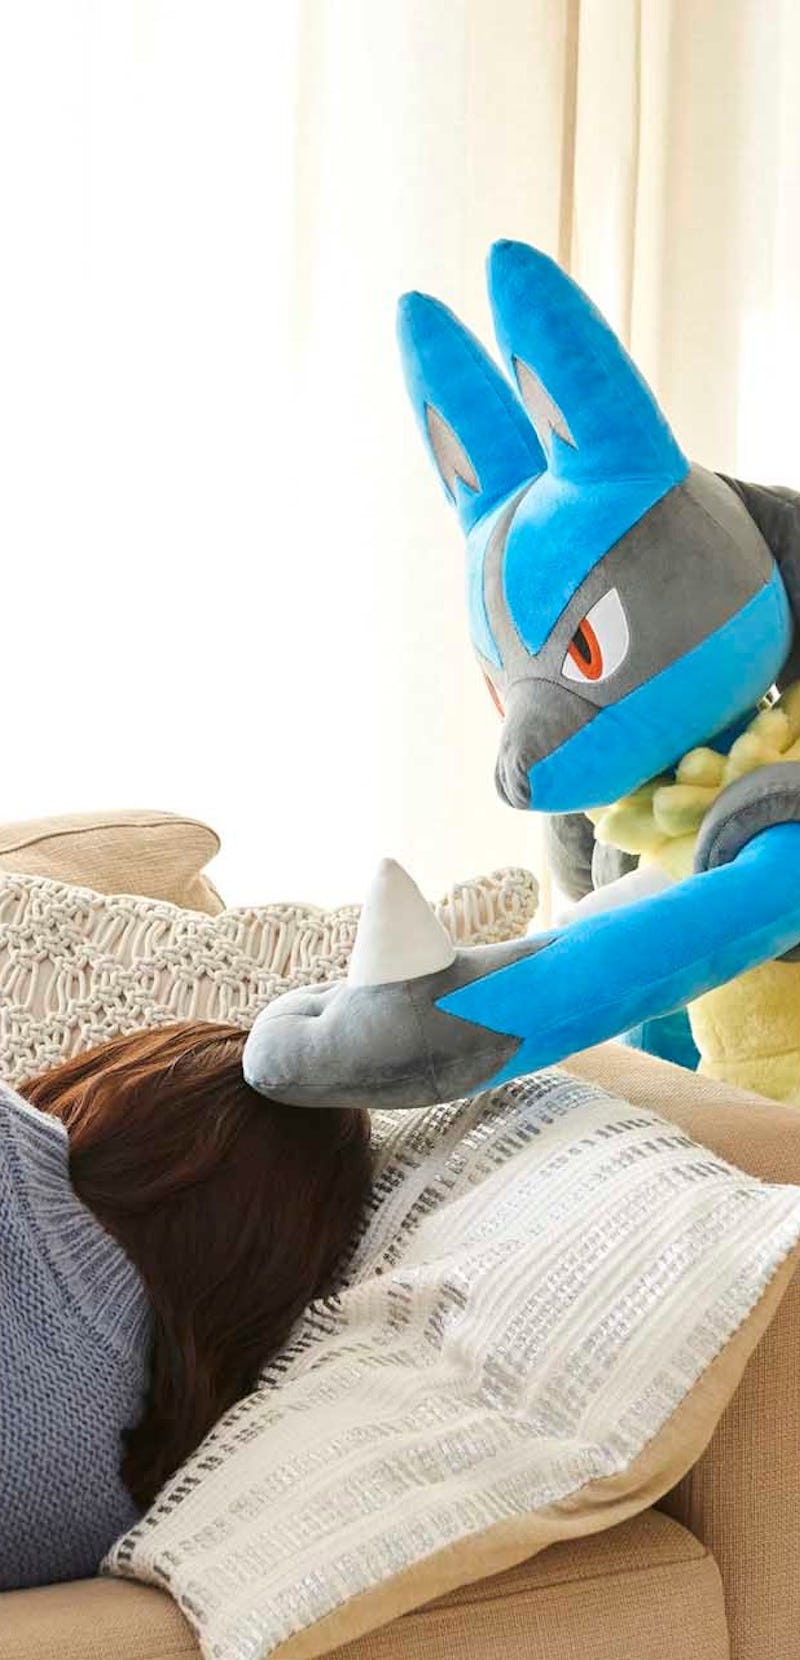 giant Lucario Pokémon plush